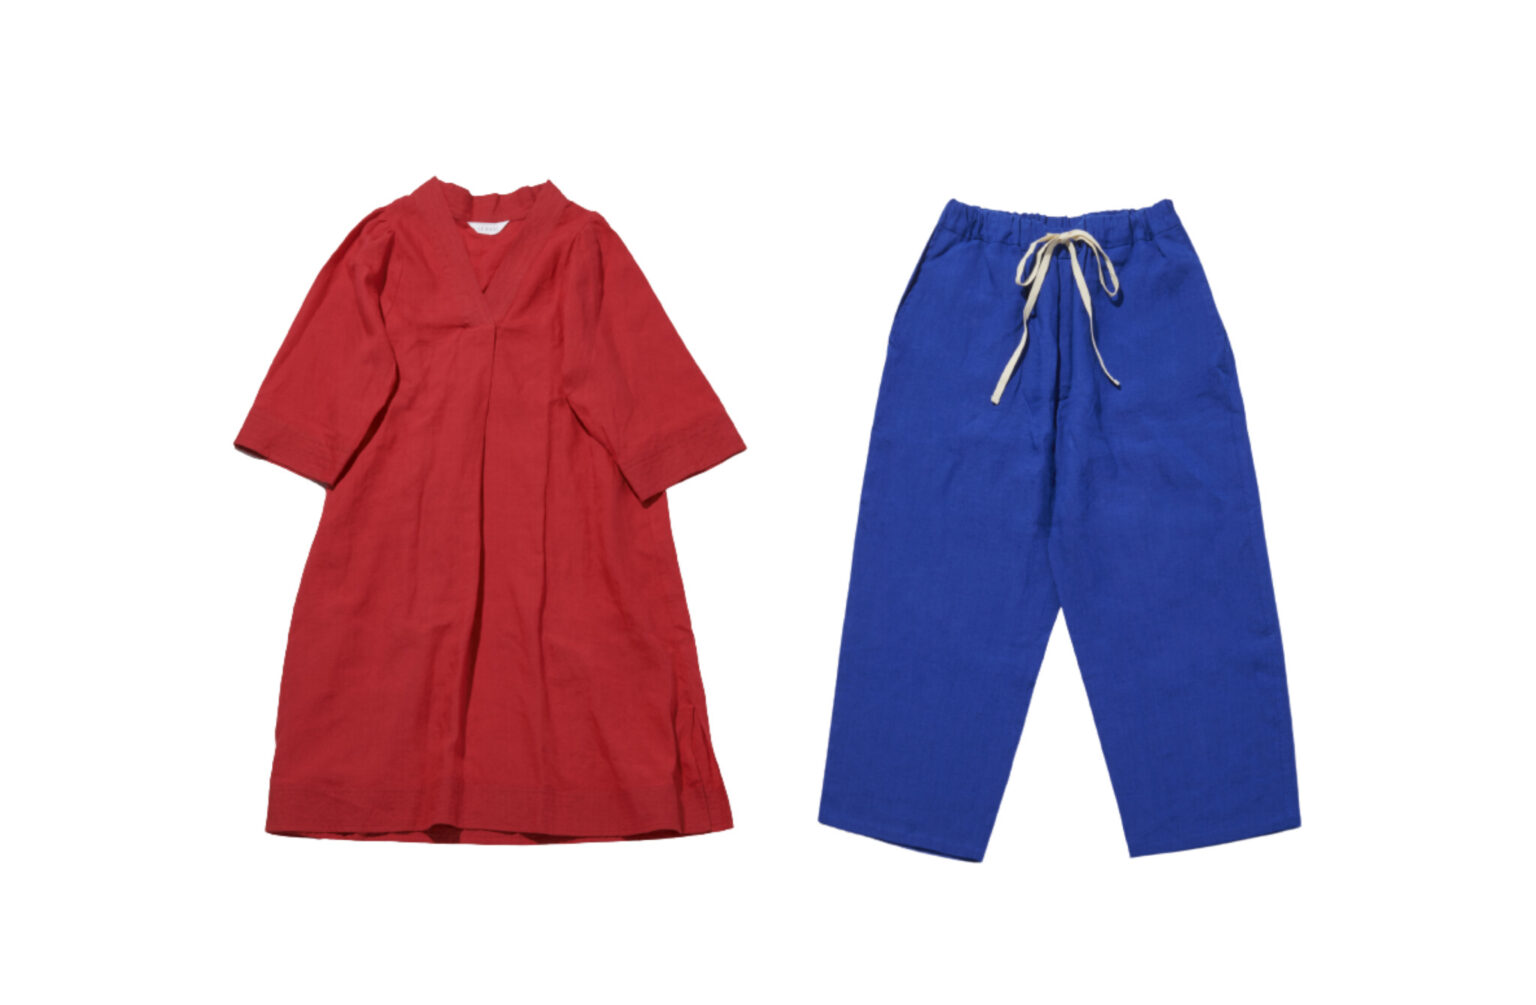 〈LEQUIO〉のリネンリゾートウェア。沖縄の琉球藍染めアイテムのほか、オリジナルリネンを使用した通年で着用できるファッションアイテムを提案。左は「EASY WIDE PANTS」、右は「Stitch OP」。那覇の百貨店〈デパートリウボウ〉などで販売。